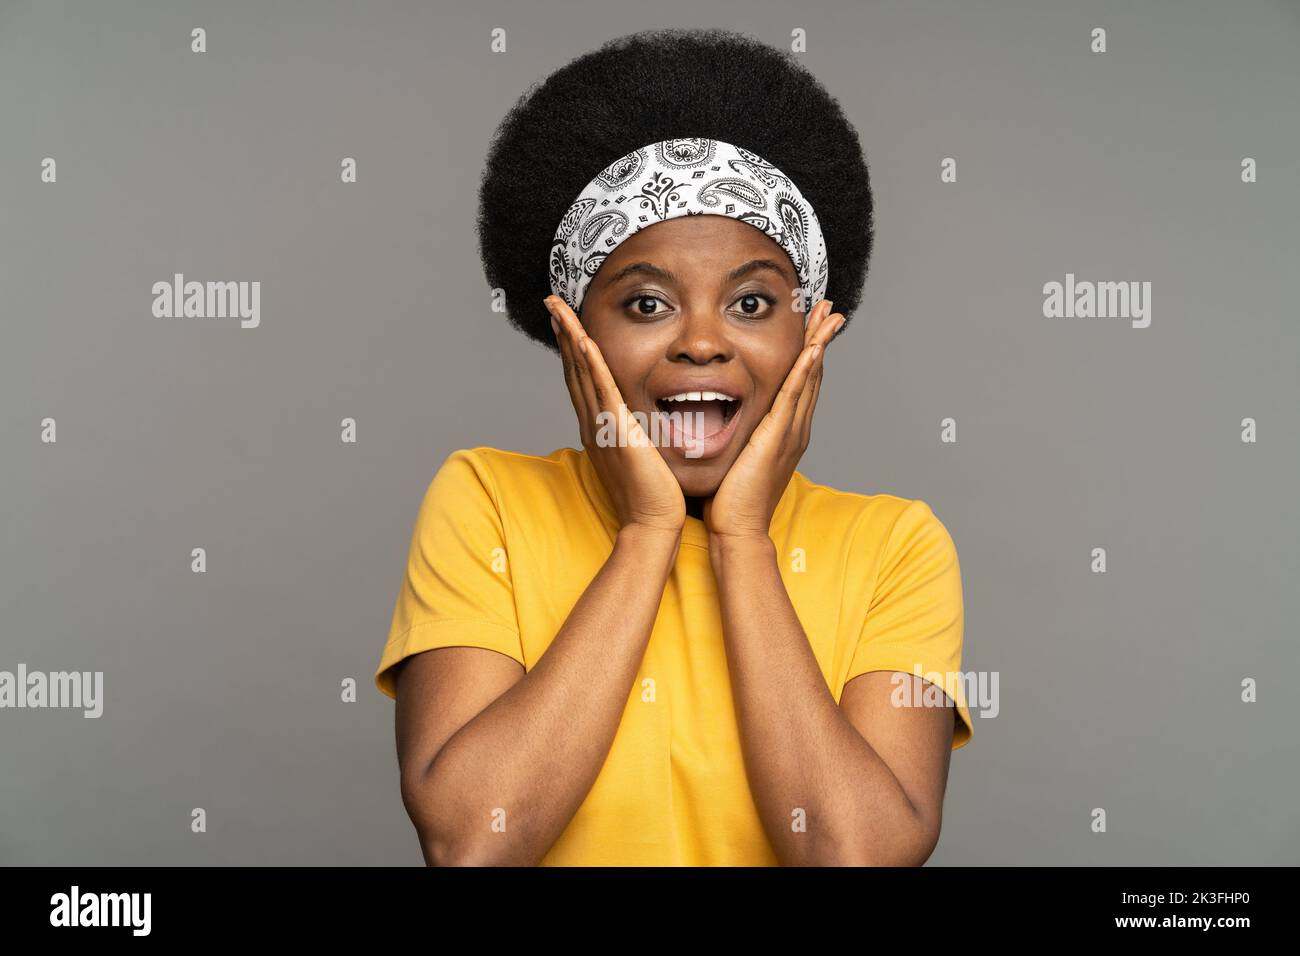 Una mujer afroamericana realiza un boceto que muestra una expresión divertida y perpleja contra la pared del estudio Foto de stock